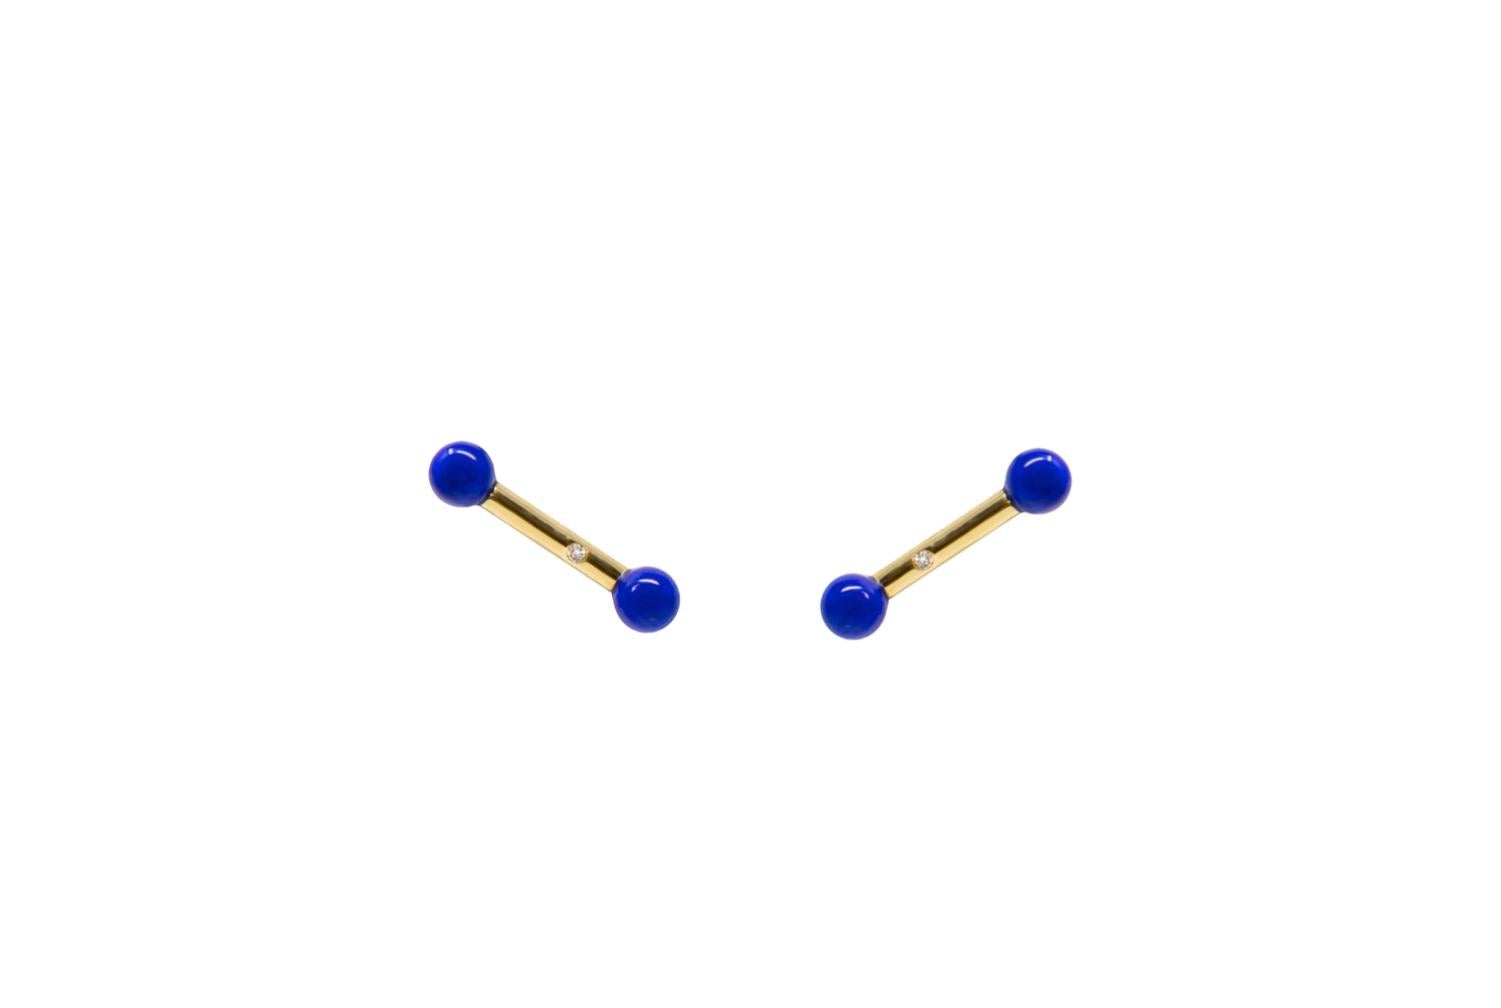  Boucles d'oreilles en or jaune 18 carats avec diamants, lapis-lazuli. Manchette en Lapis Lazuli. Les boucles d'oreilles peuvent être portées avec ou sans la manchette en perles de calcédoine bleue.
Pierres sculptées à la main à partir d'un design